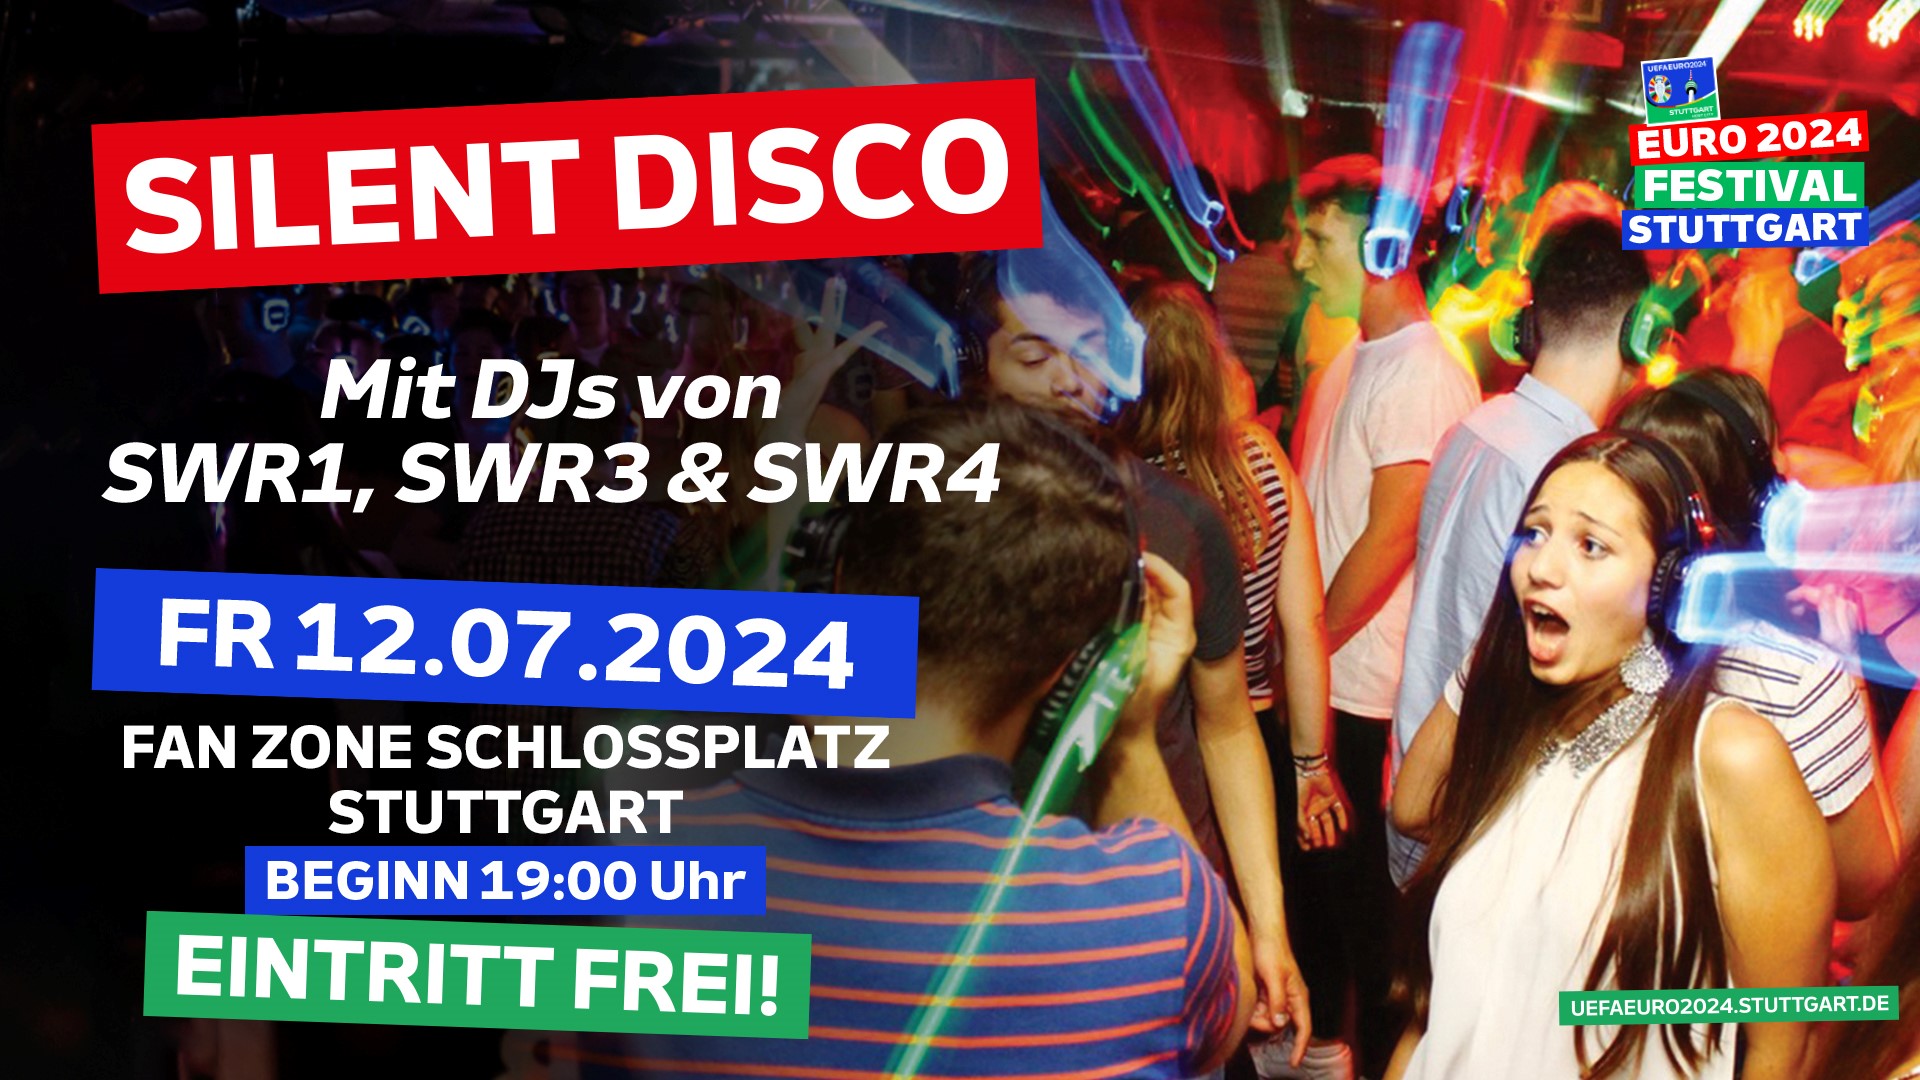 Silent Disco Rekordversuch auf dem Schlossplatz Stuttgart in der Euro 2024 Fan Zone